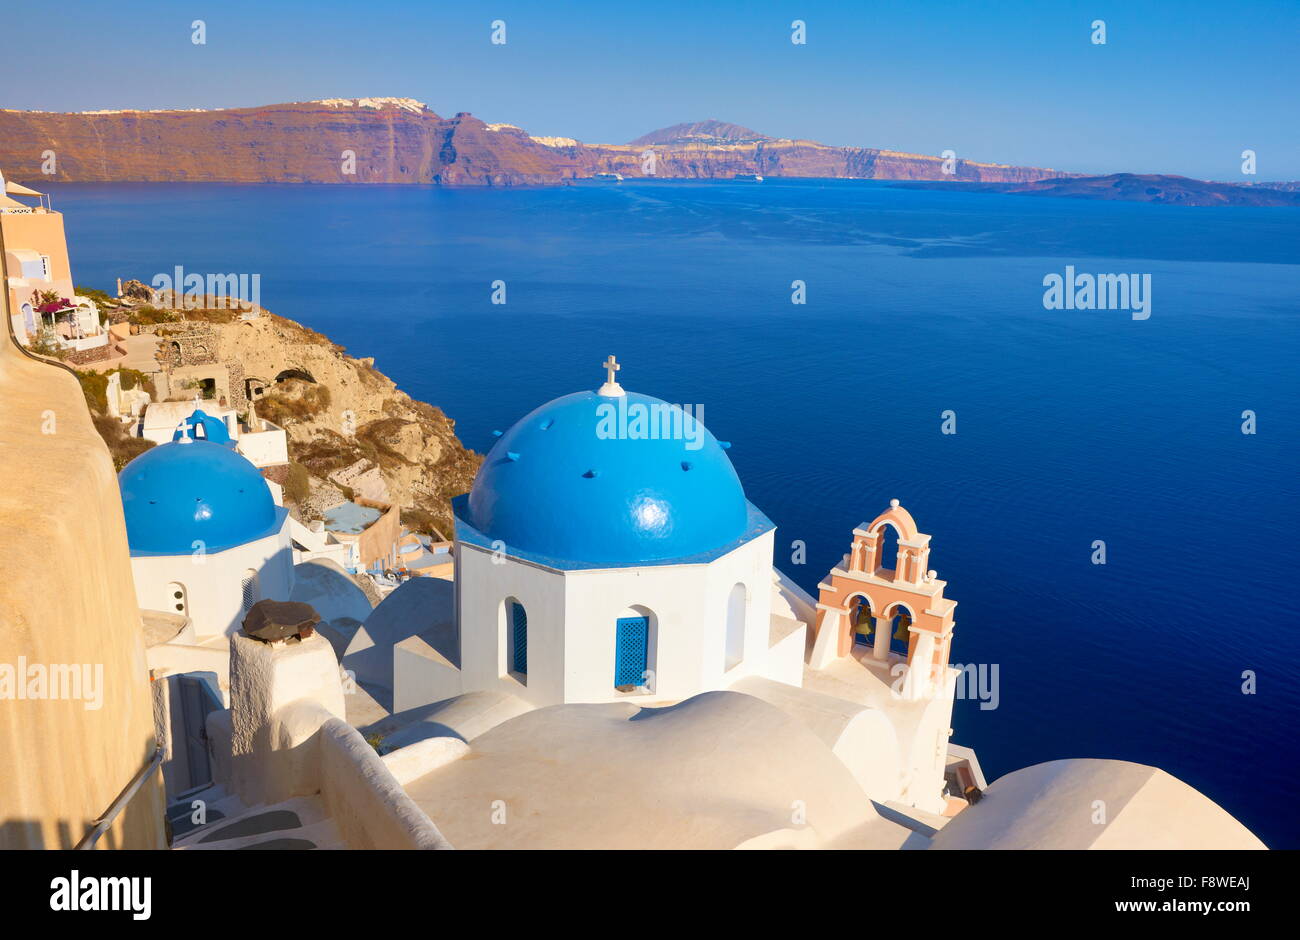 Paesaggio di Santorini con greca chiesa bianca, il campanile e il Mare Egeo in background, la cittadina di Oia - Santorini Island, Grecia Foto Stock